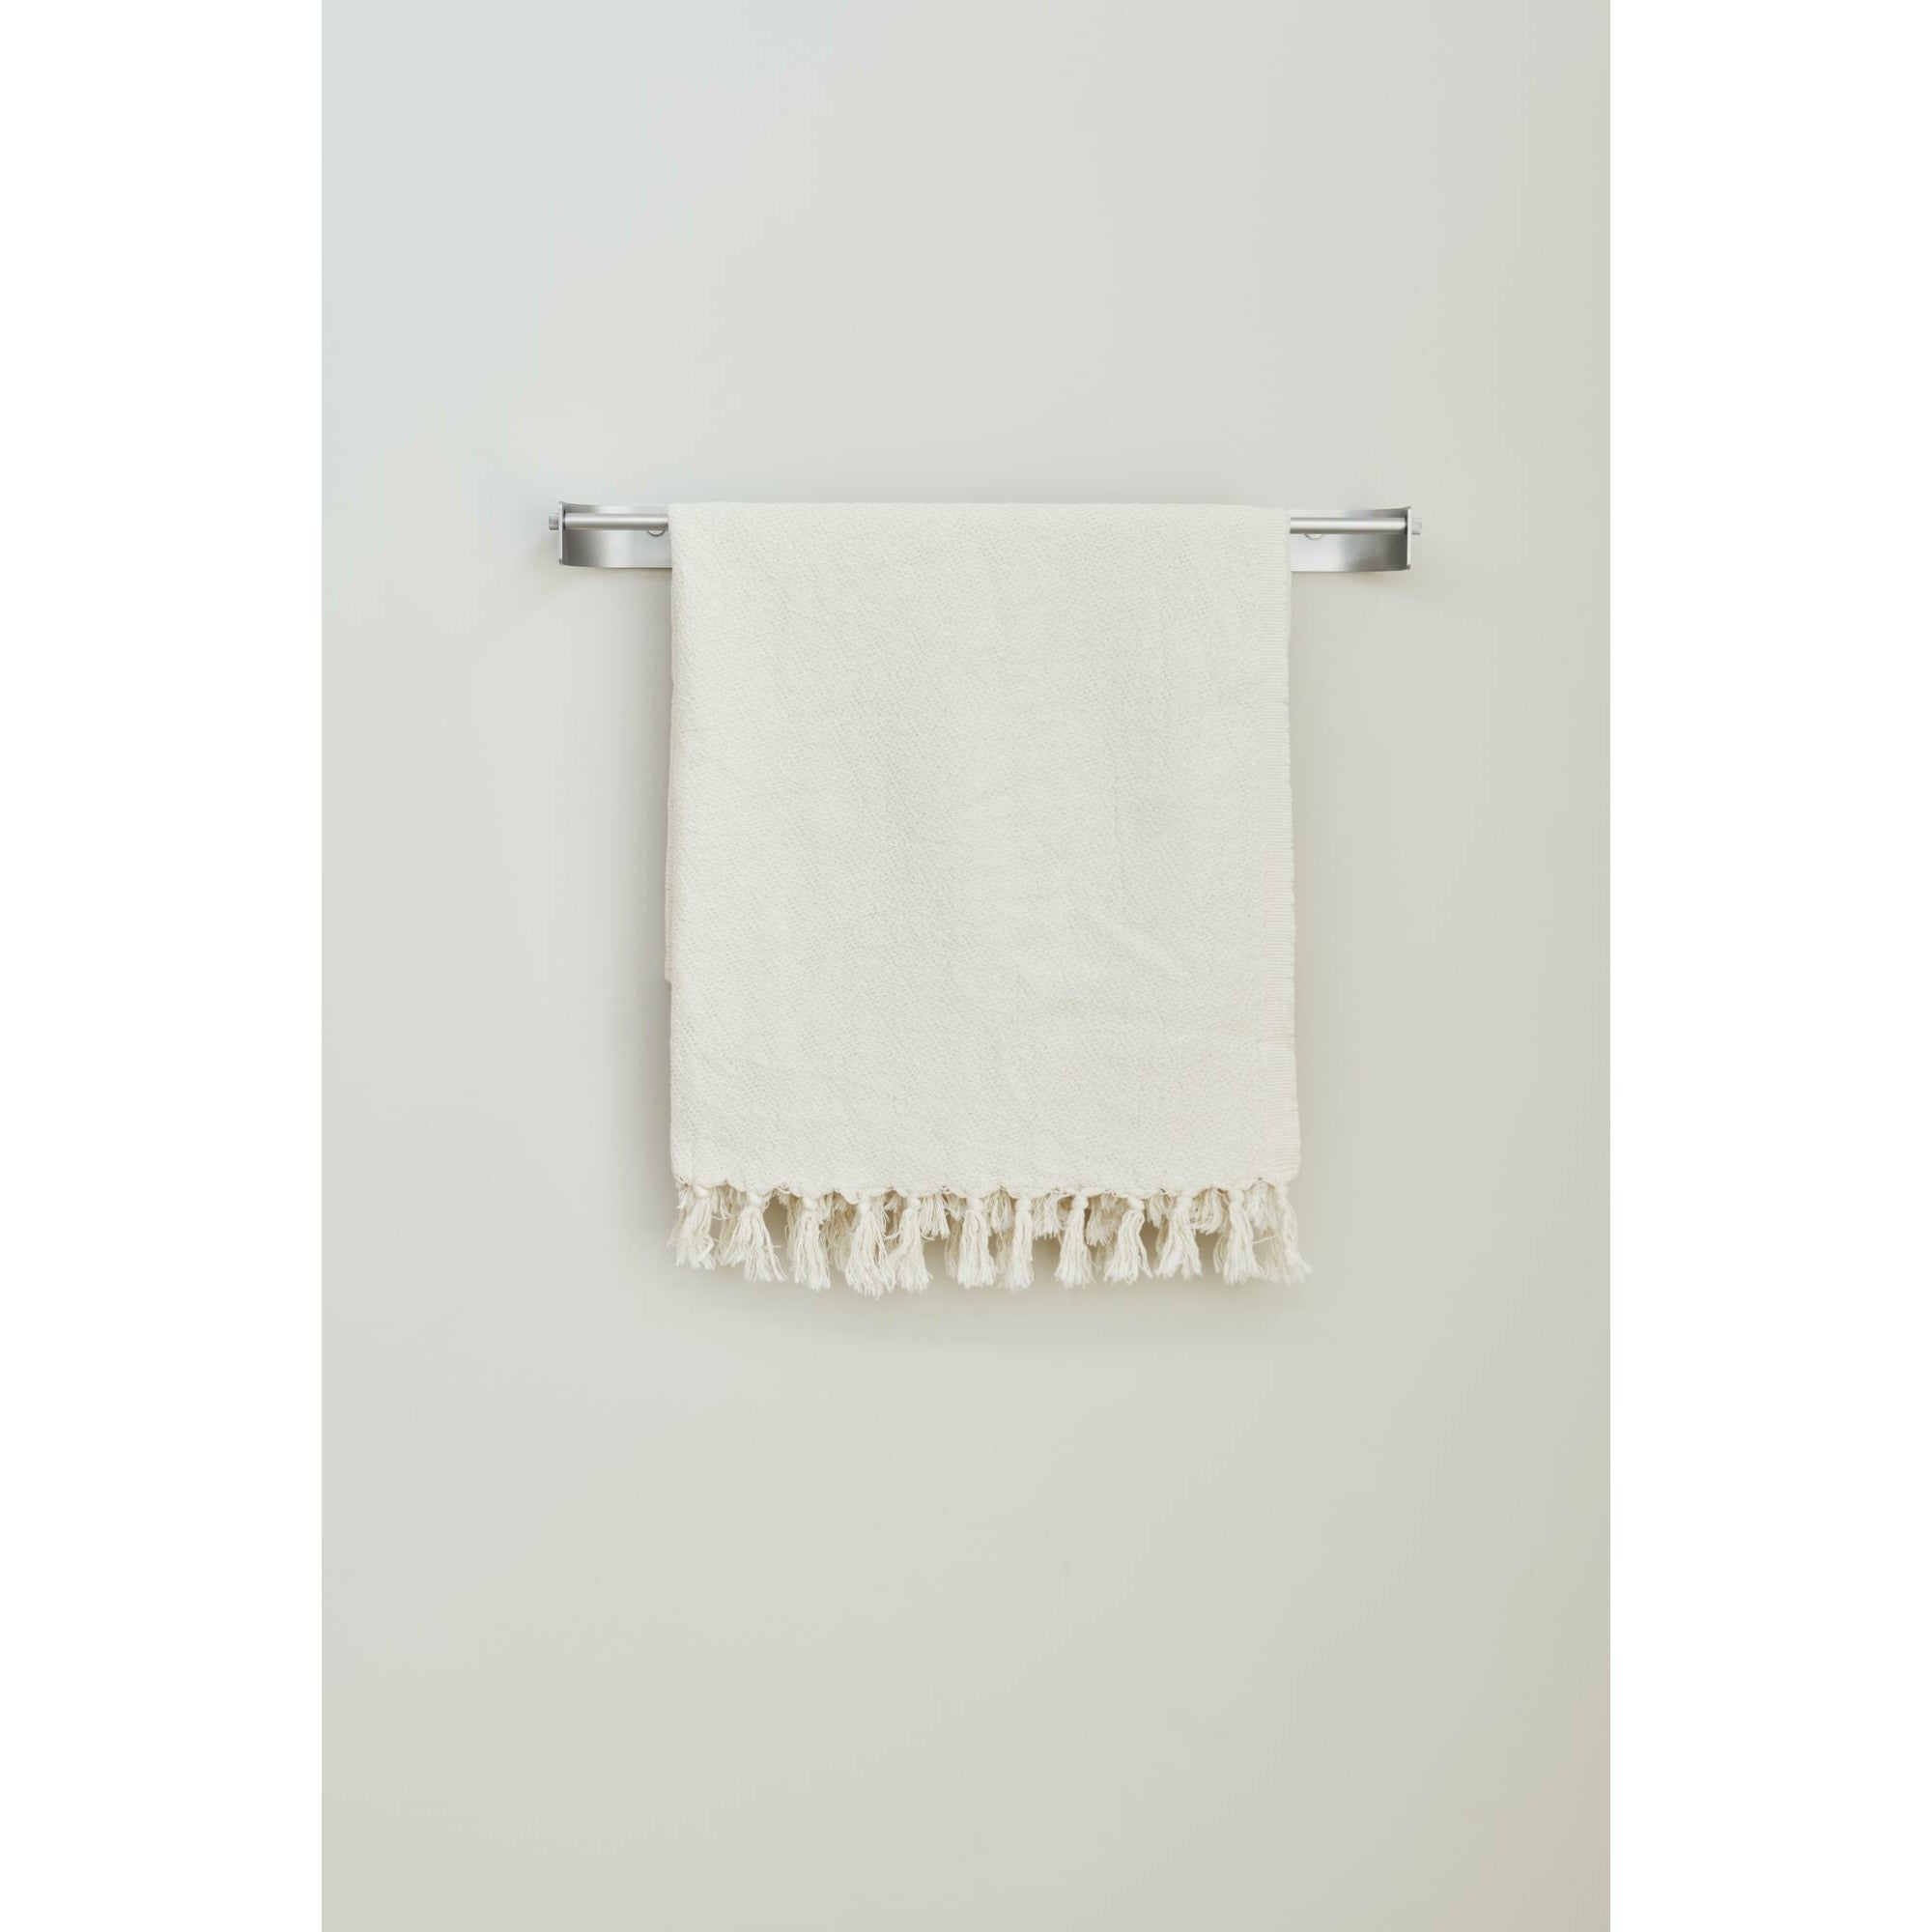 Forma e perfezionamento della barra dell'asciugamano ad arco singolo. Acciaio